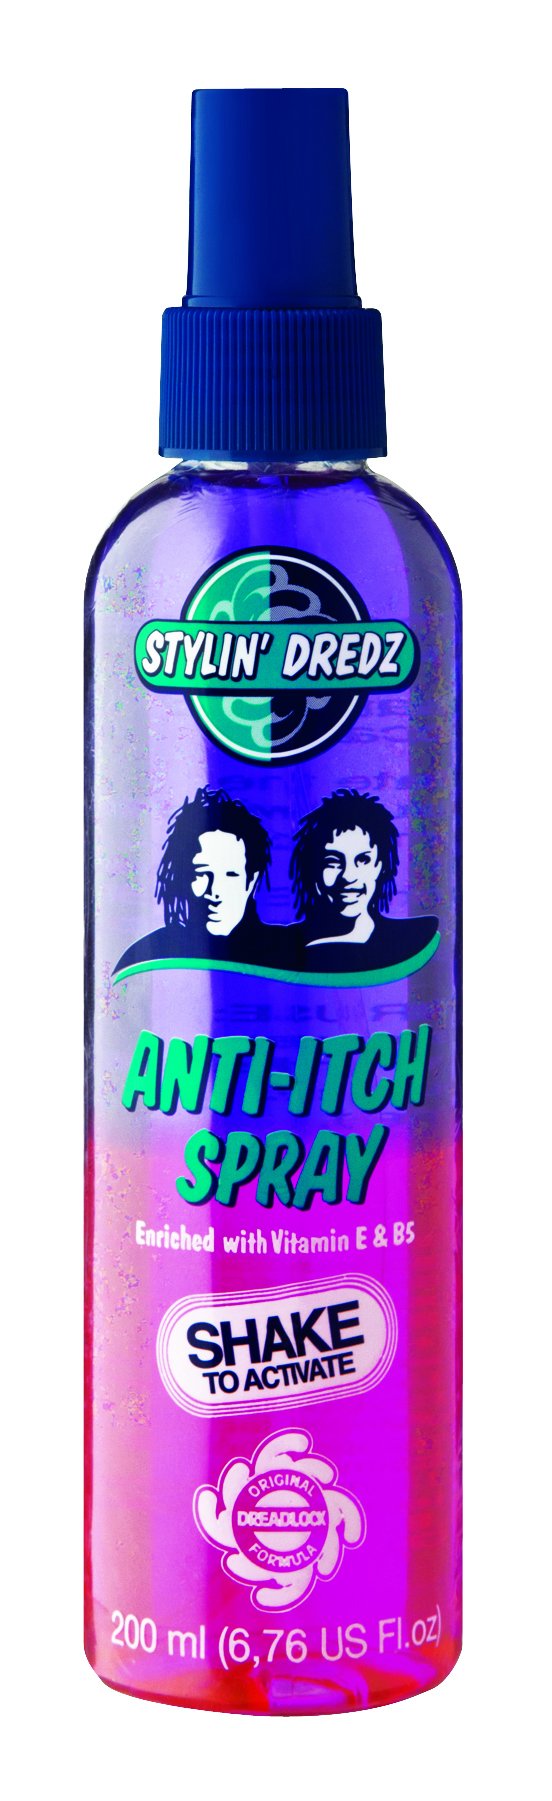 Stylin' Dredz Anti-Itch Spray 200ml